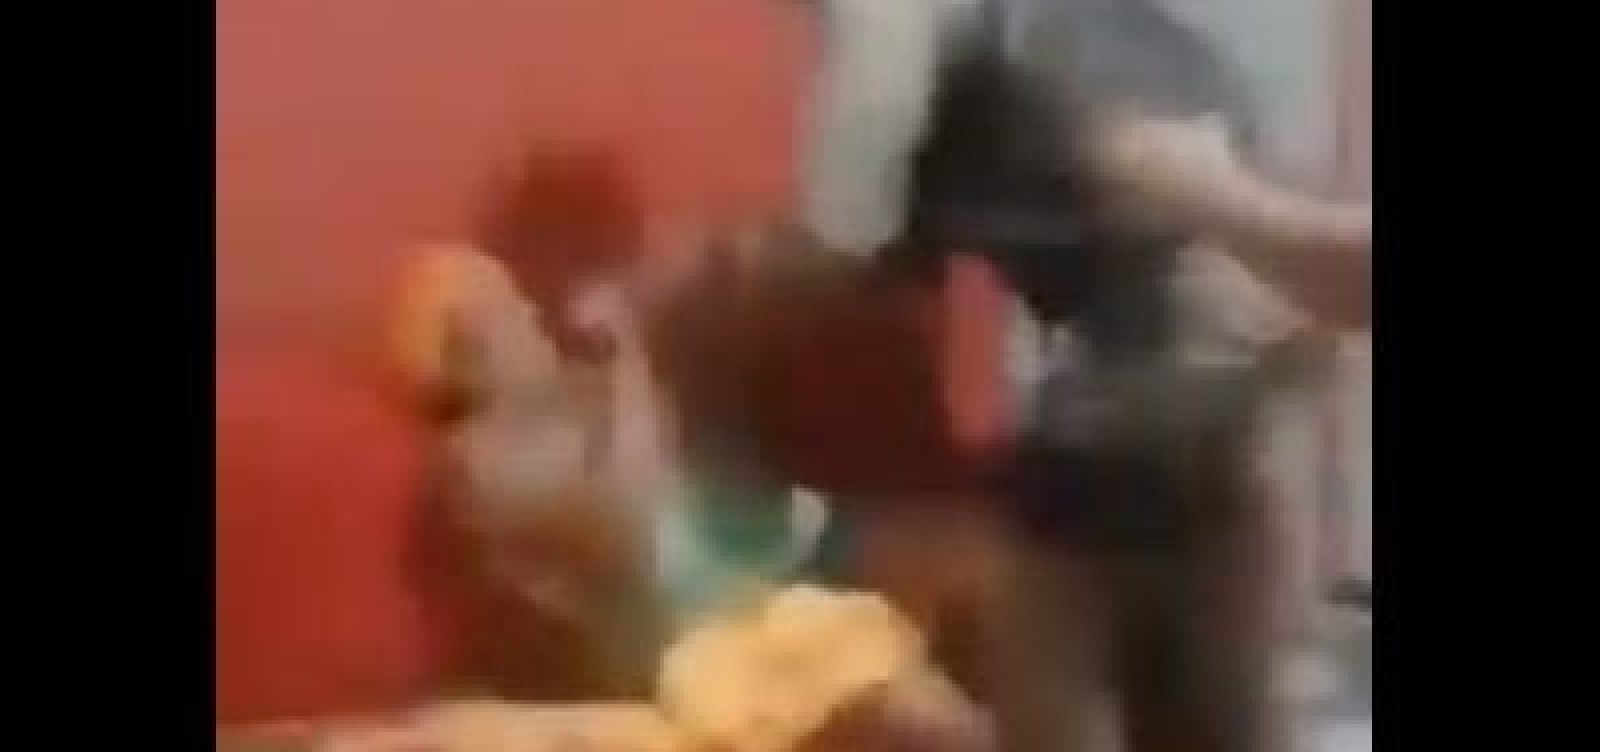 [Policial agride mulher em abordagem por aglomeração em Teixeira de Freitas; veja vídeo]